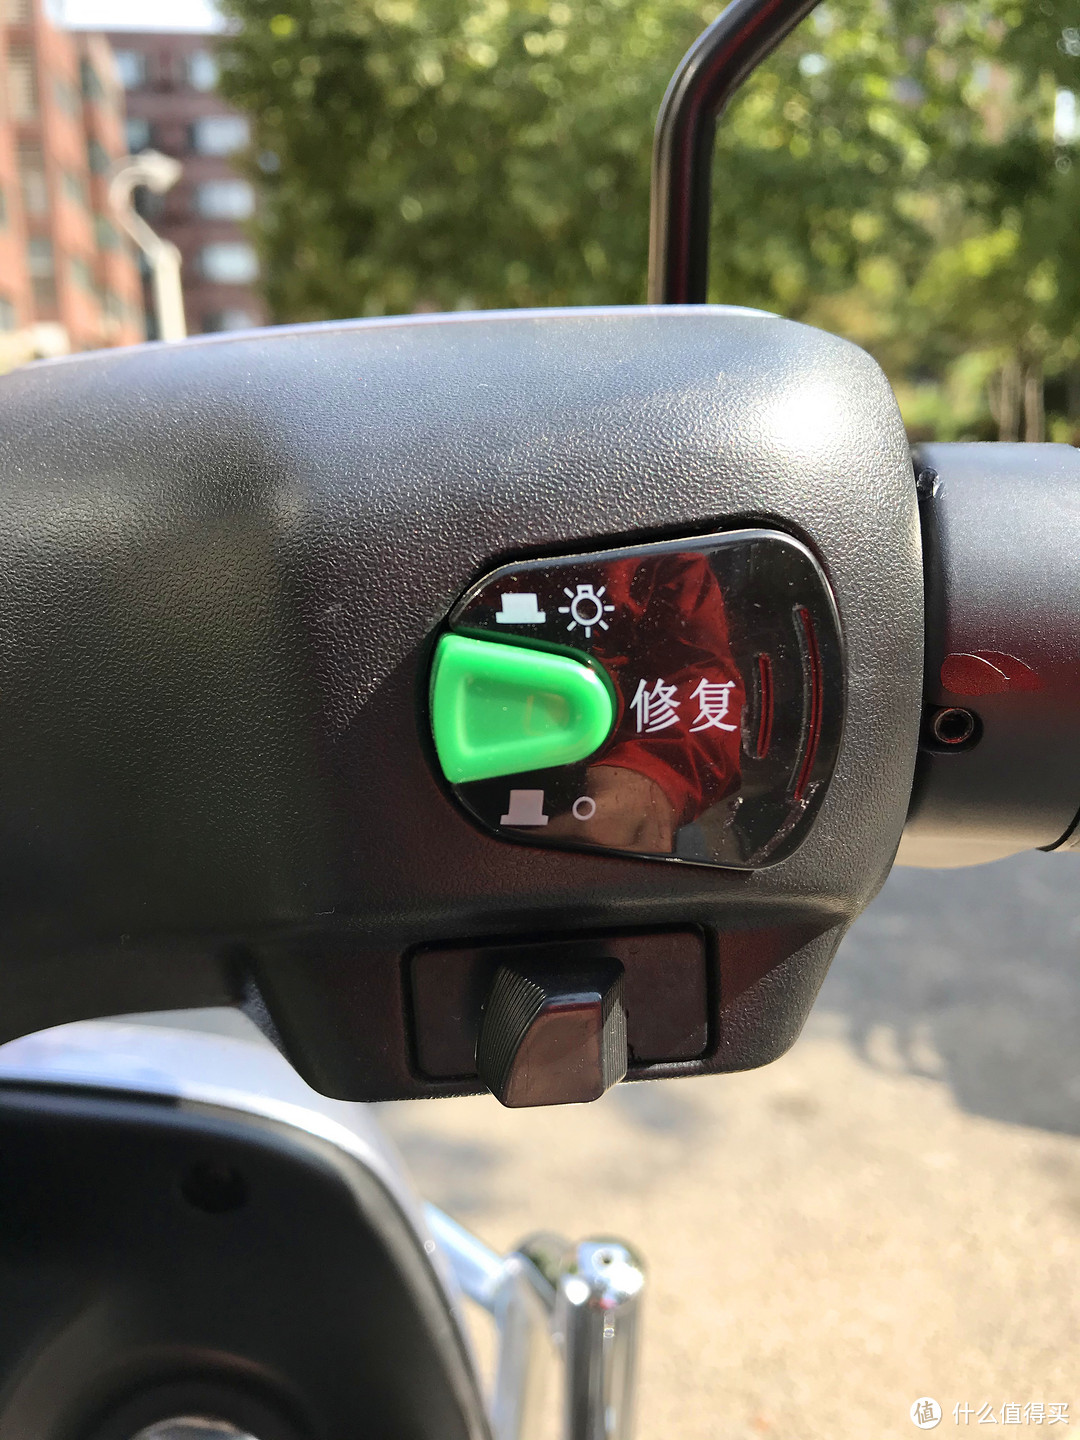 右侧最大按钮是修复按钮，绿色的是前大灯开关，是的，大灯能关上。下方是调速按钮，能选择1、2、3挡，这个代替了以前的经济、爬坡、负重那种功能。